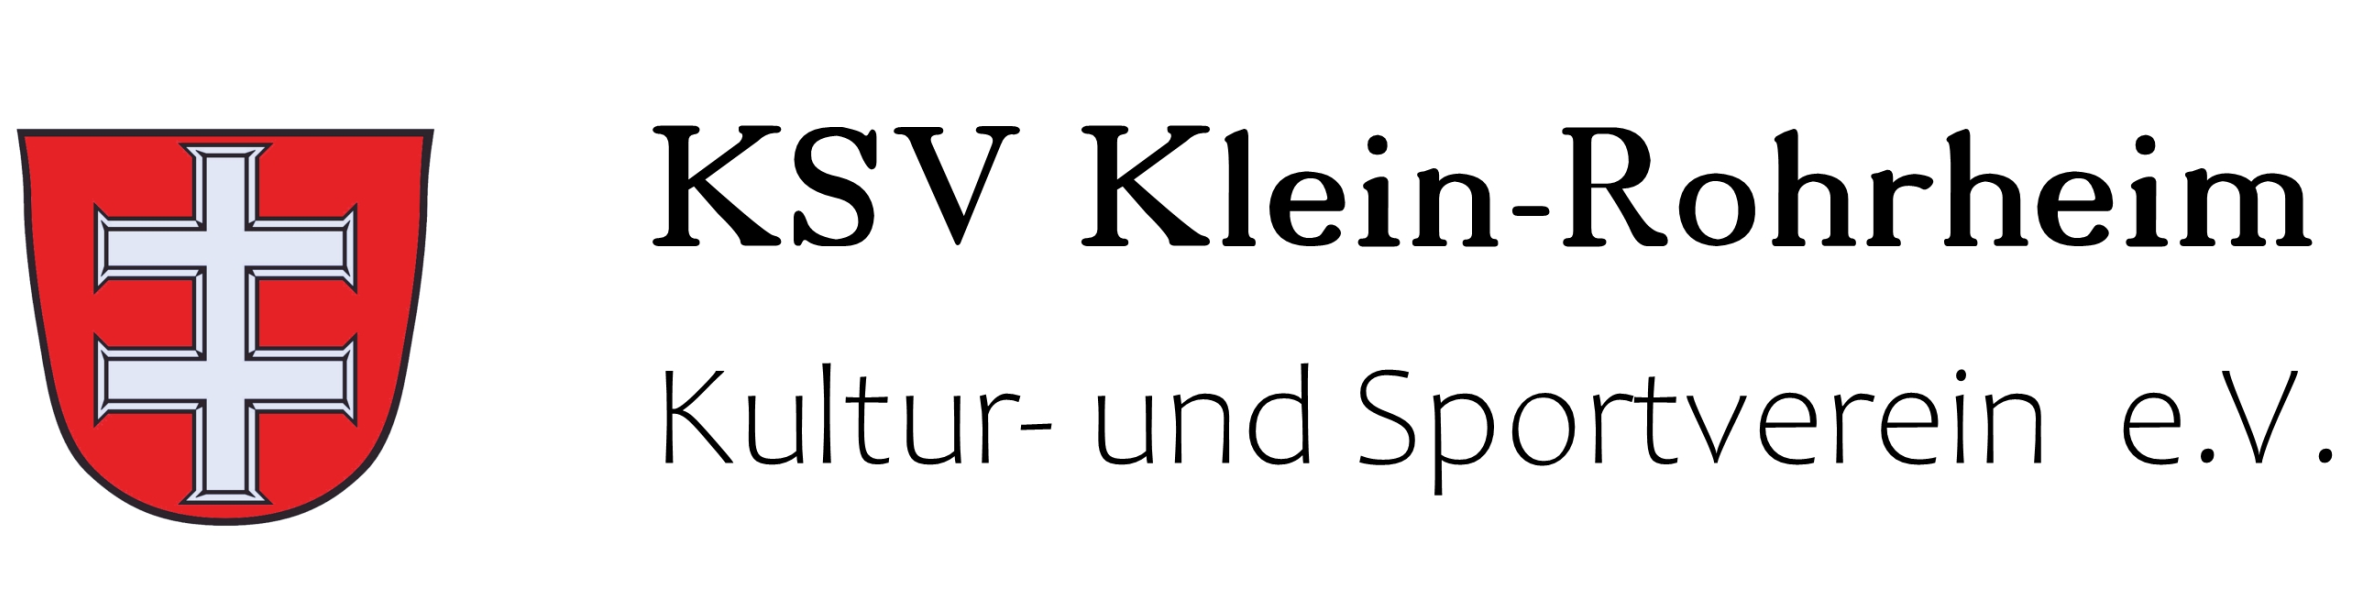 KSV Klein-Rohrheim